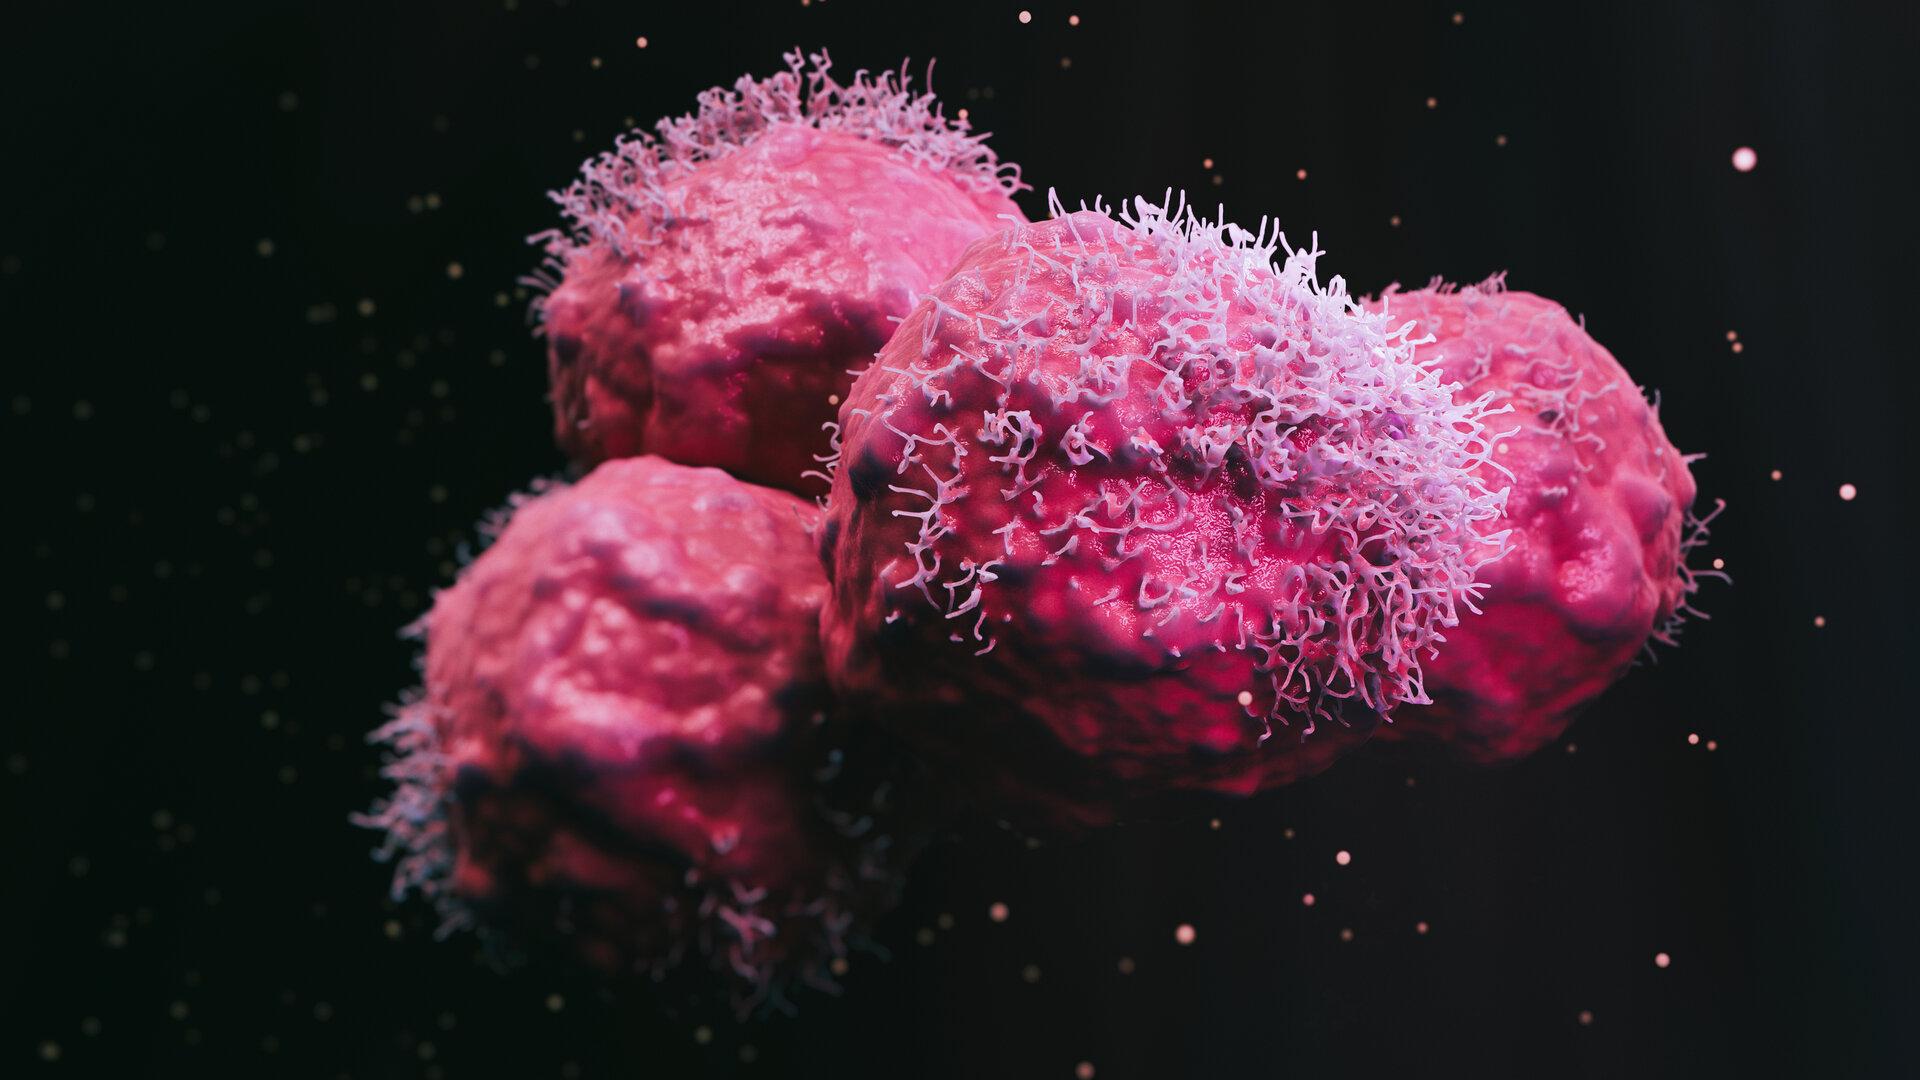 Mundbakterien auf Krebsjagd: Fusobakterien könnten bei Therapie behilflich sein